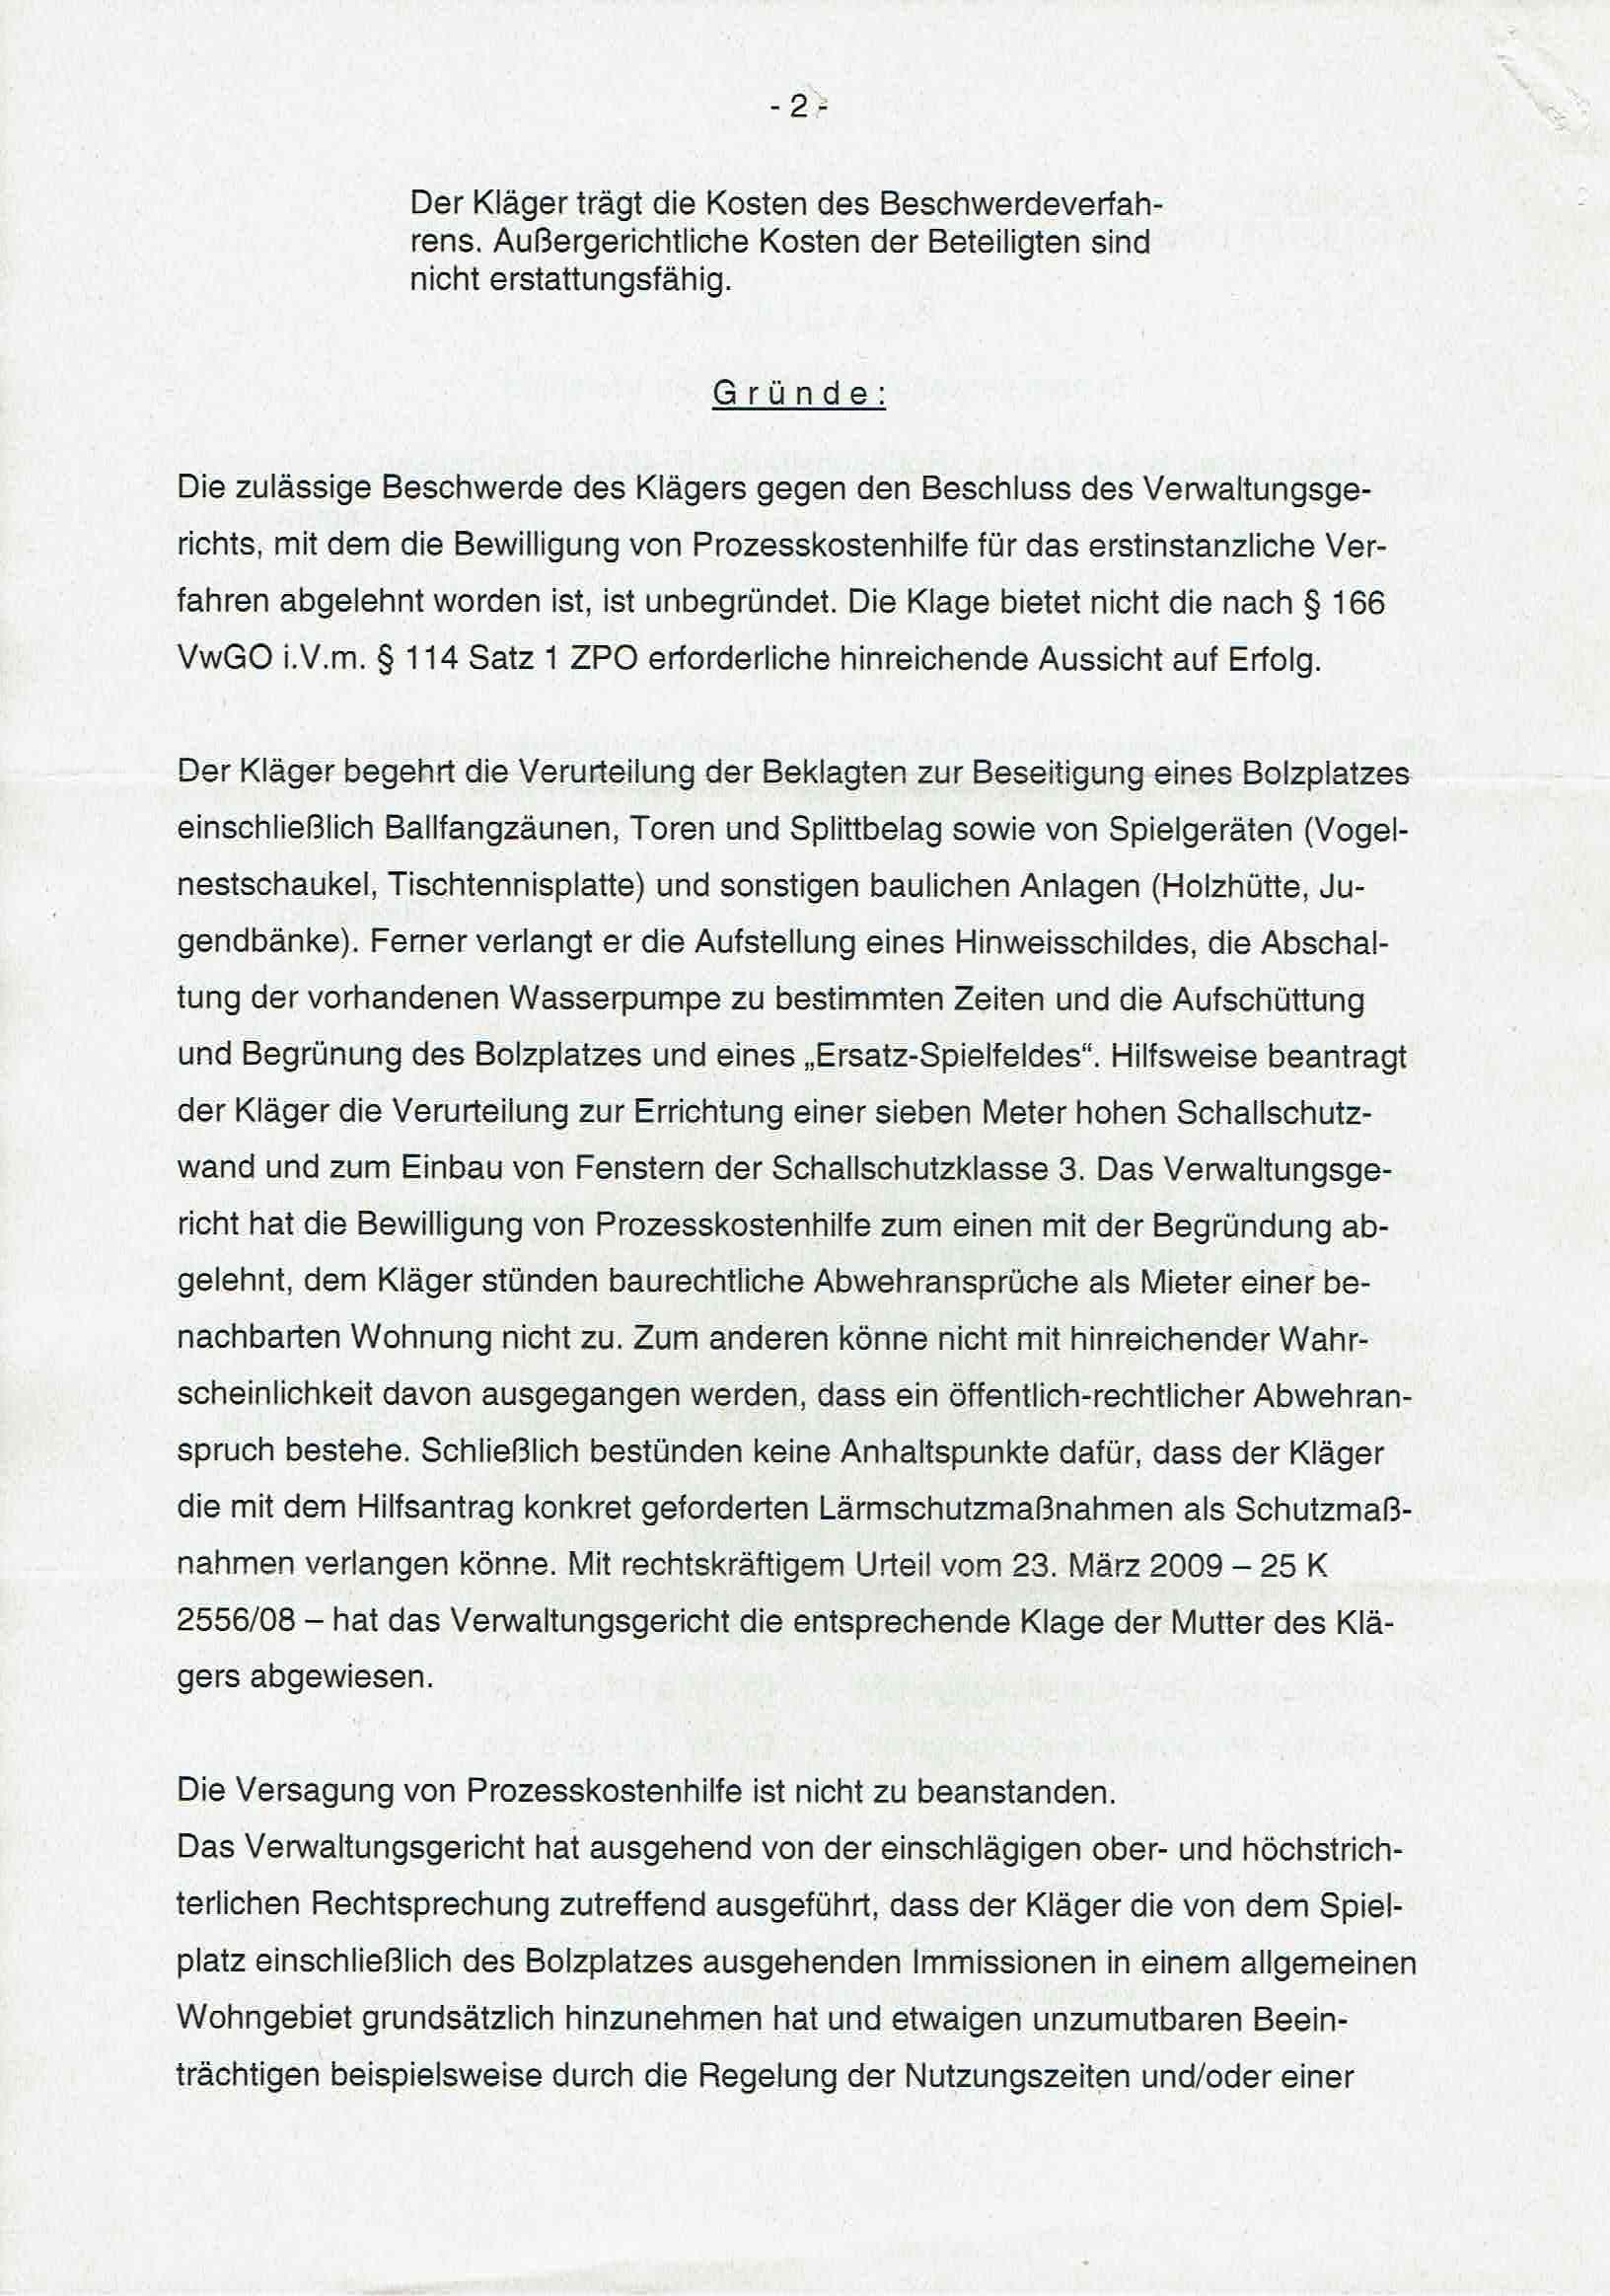 Bescheid der Richter Dr. Bernhard Schulte alias Bernd H. Schulte, Richter Dr. Ulrich Maidowski, Richter Dr. Martin Wiesmann über die Ablehnung von Prozeßkostenhilfe vom 18.05.2009, S. 2